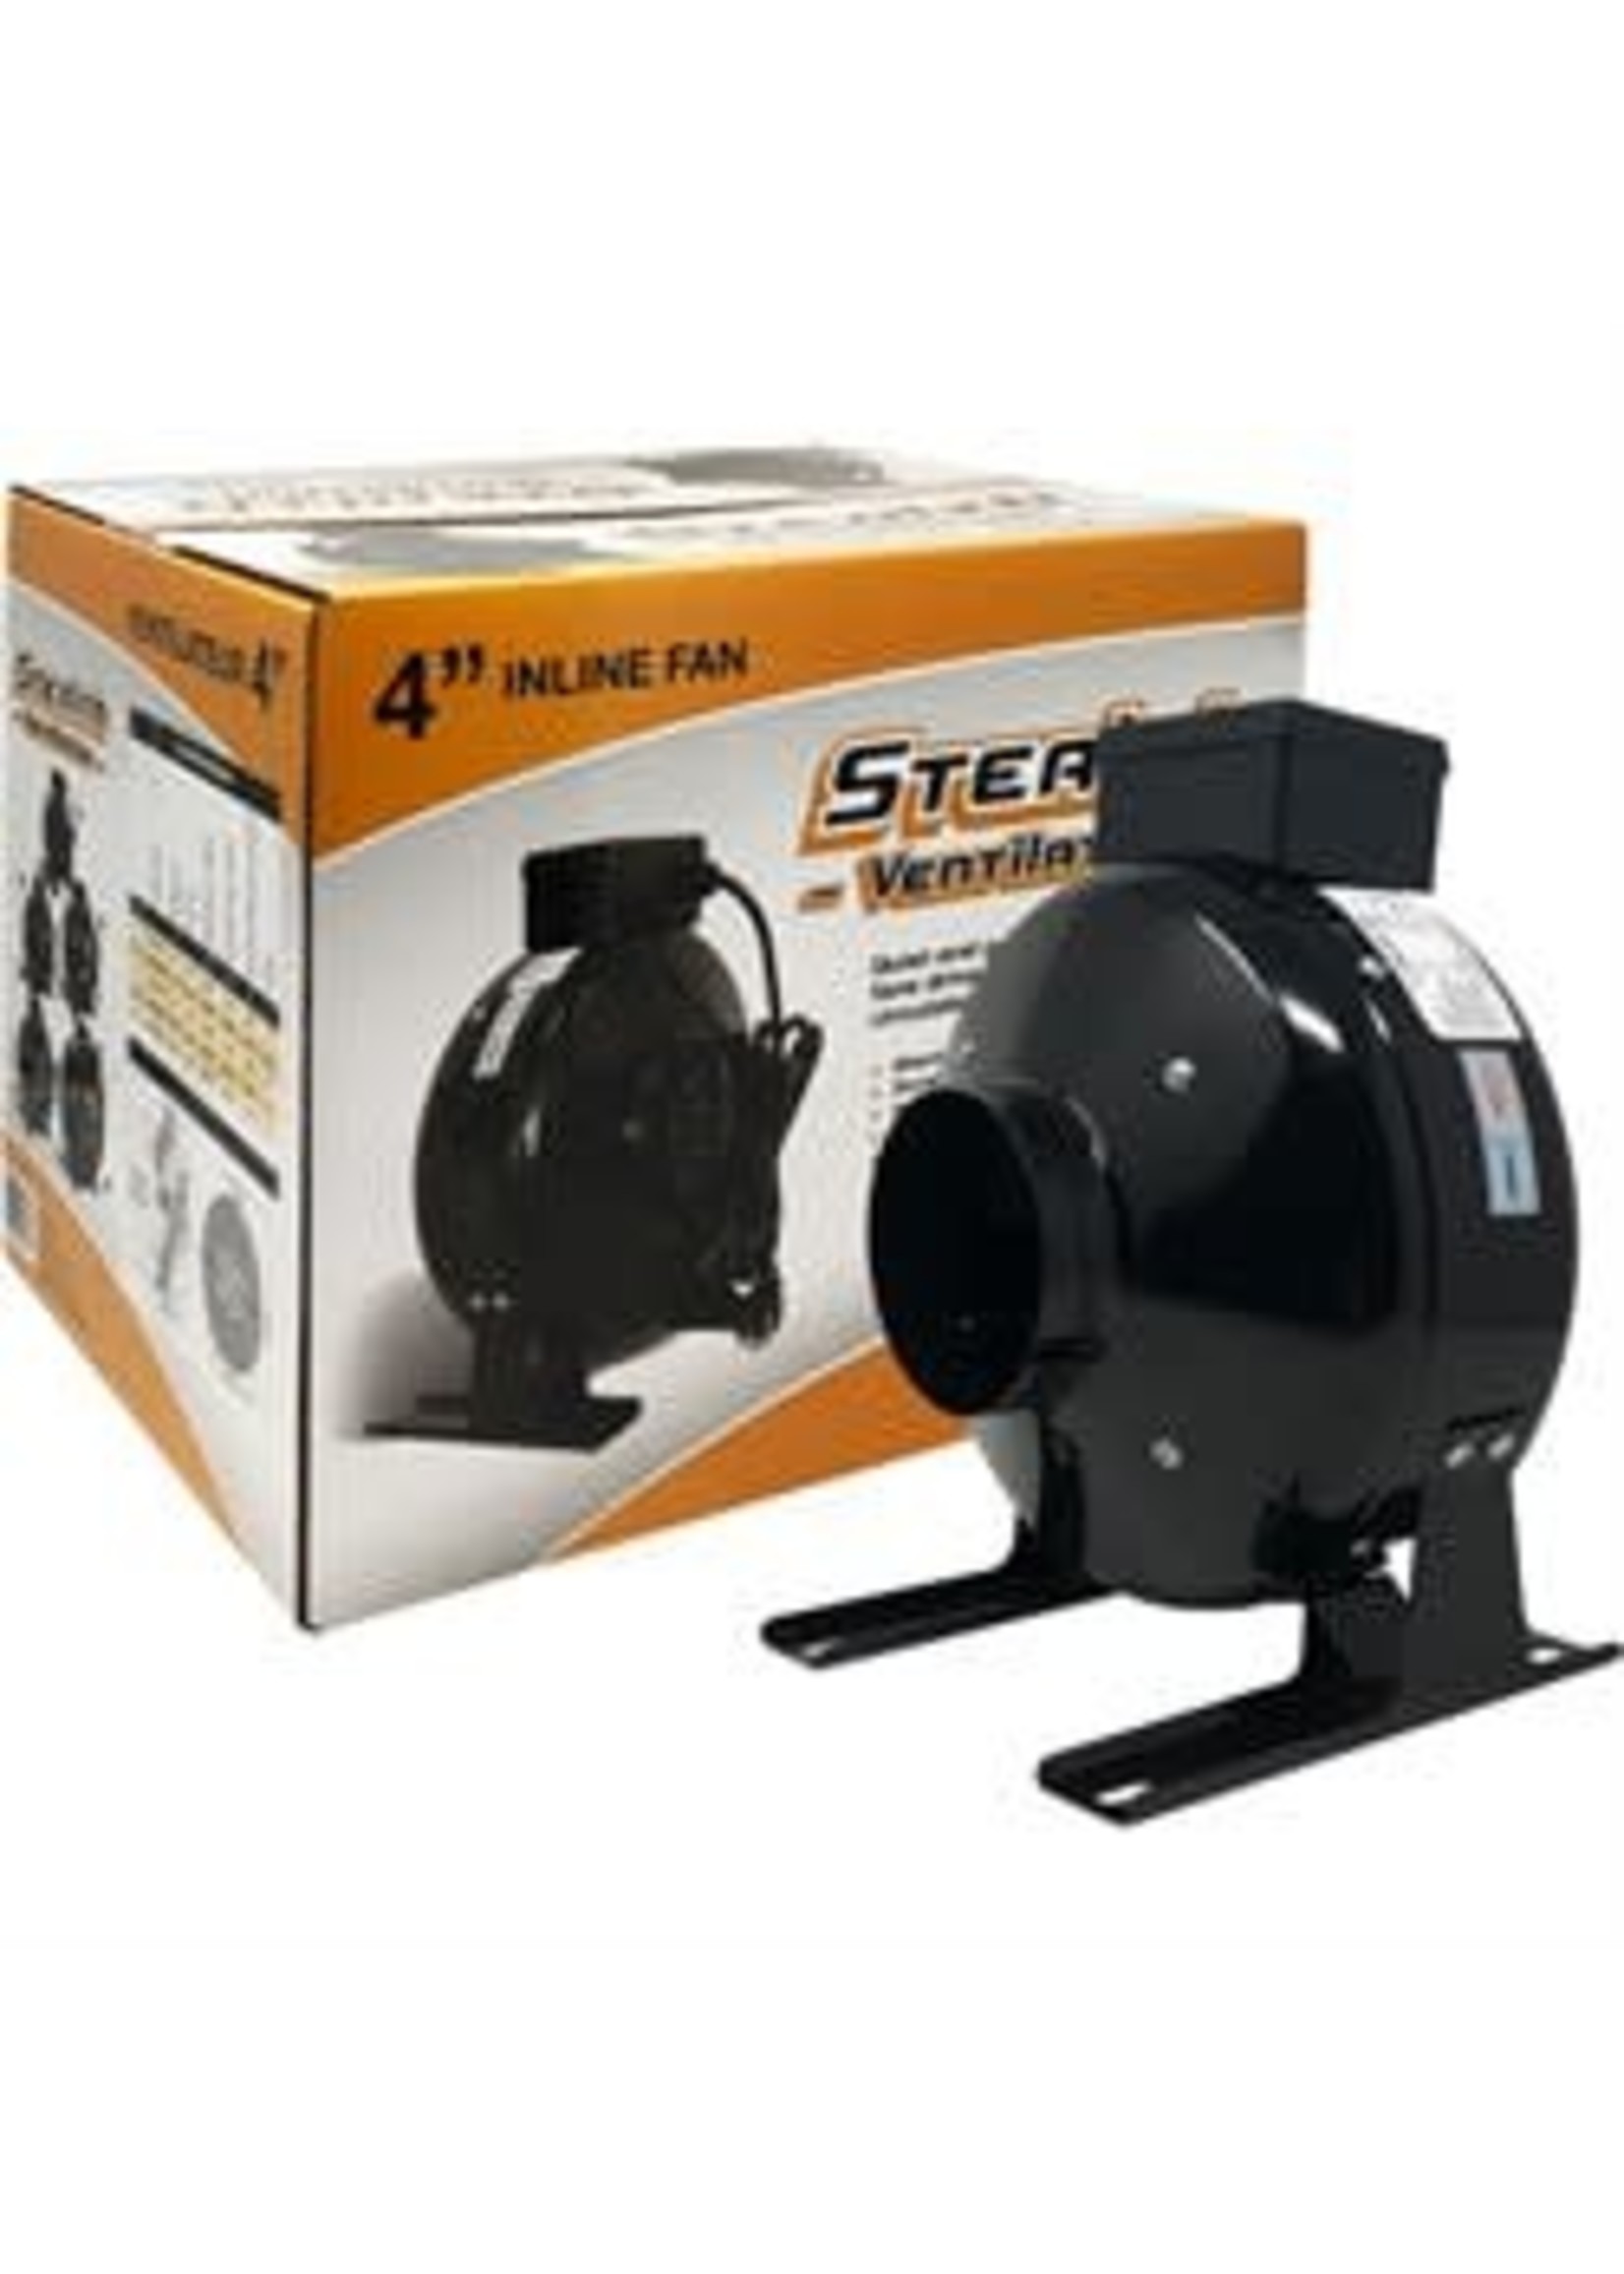 Stealth Stealth Ventilation In-line Fan 120V 4" 189CFM